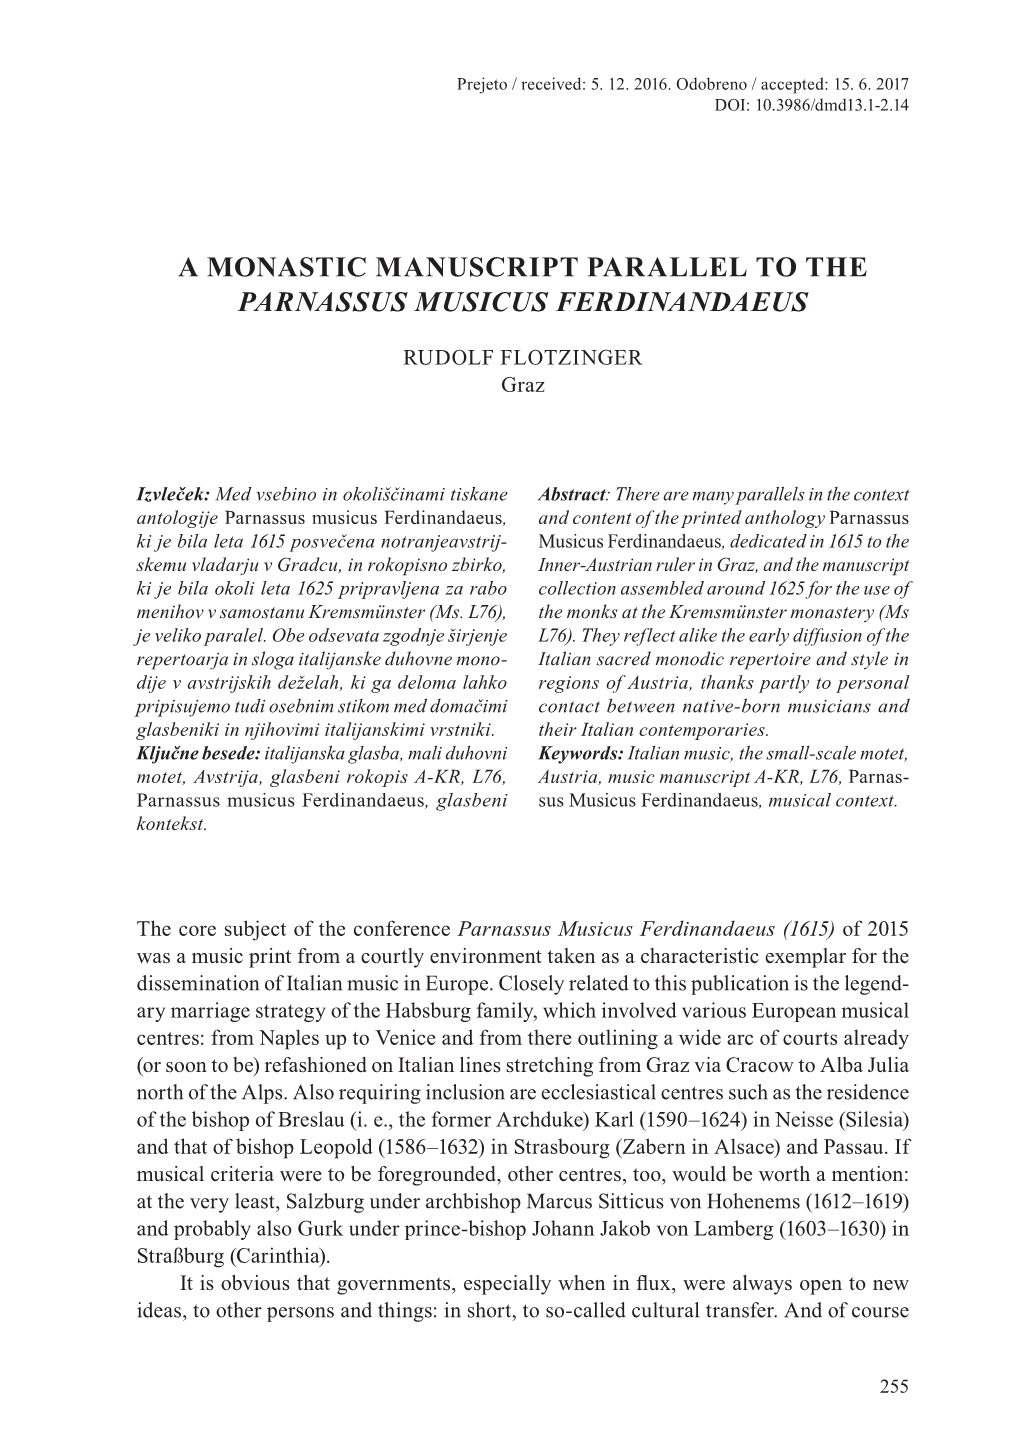 A Monastic Manuscript Parallel to the Parnassus Musicus Ferdinandaeus